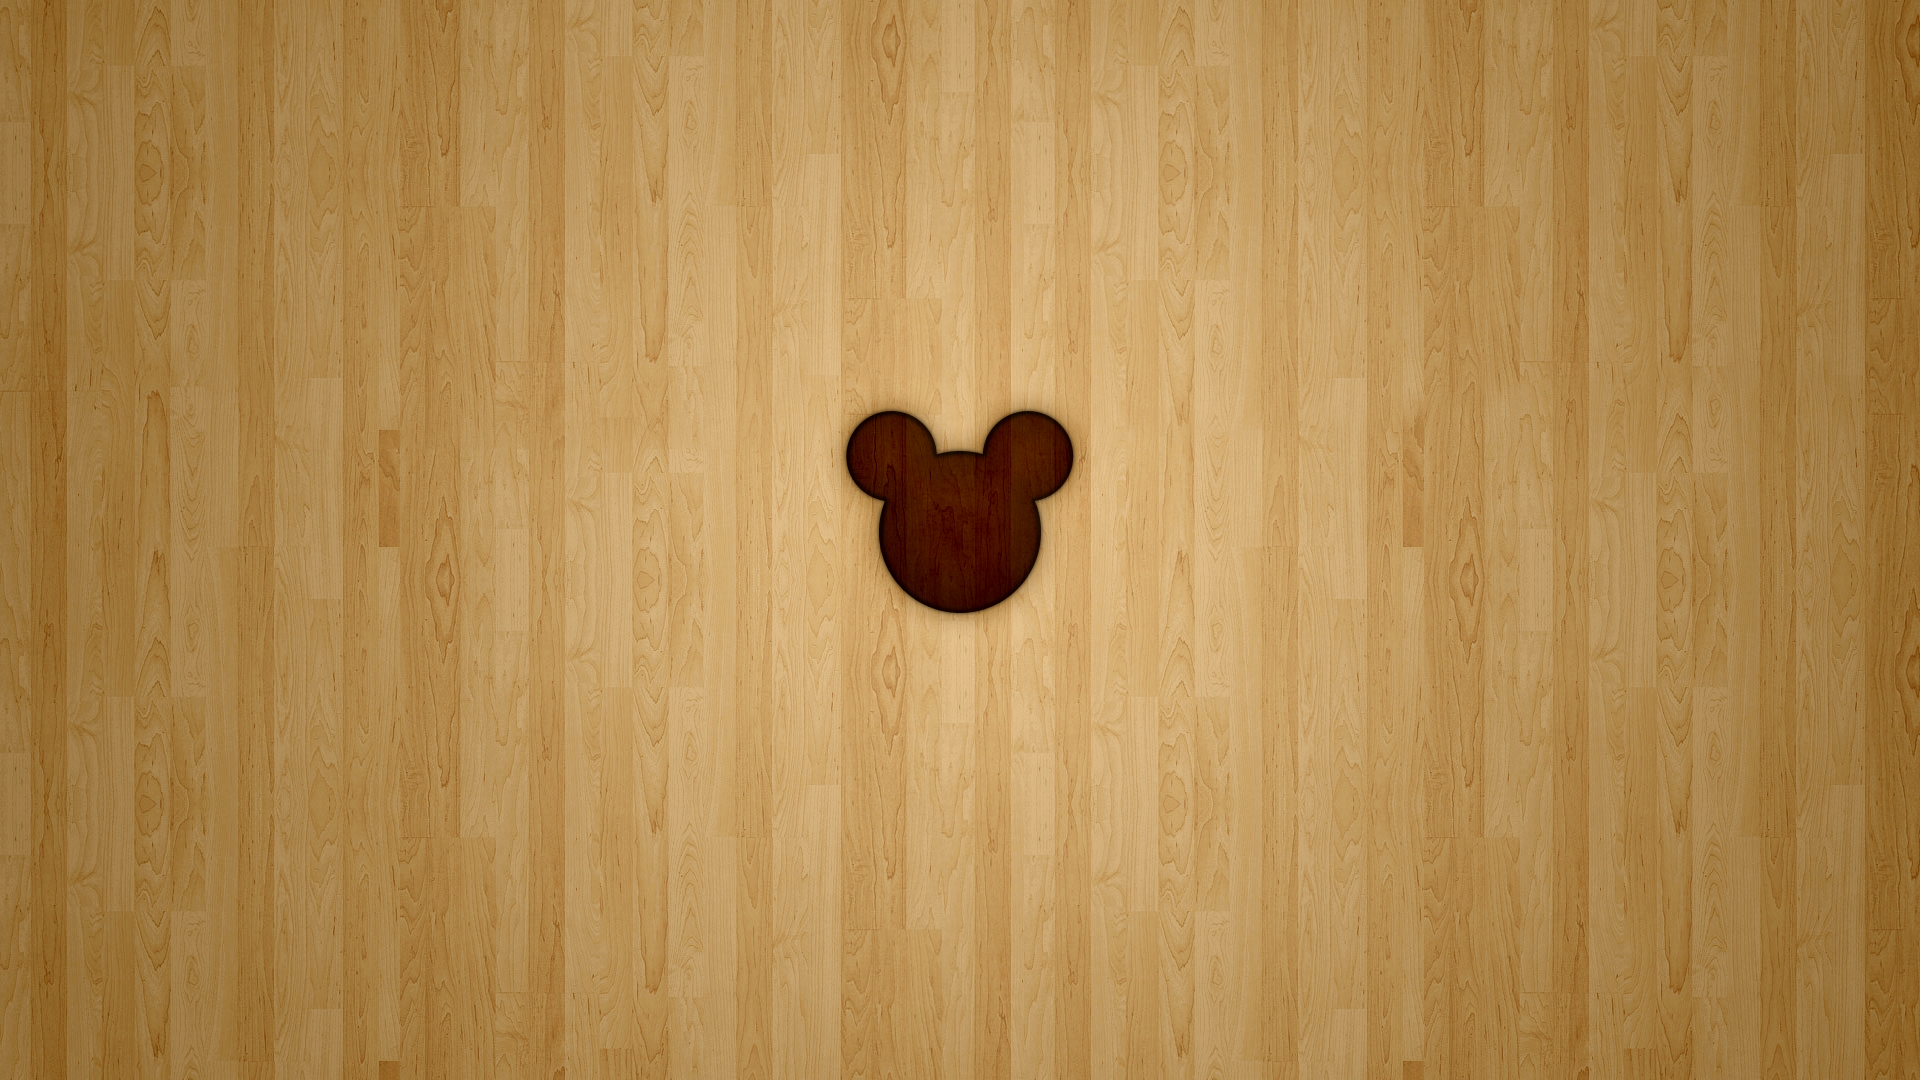 Mickey Disney Minimalistic Wood Wallpaper Minimalist